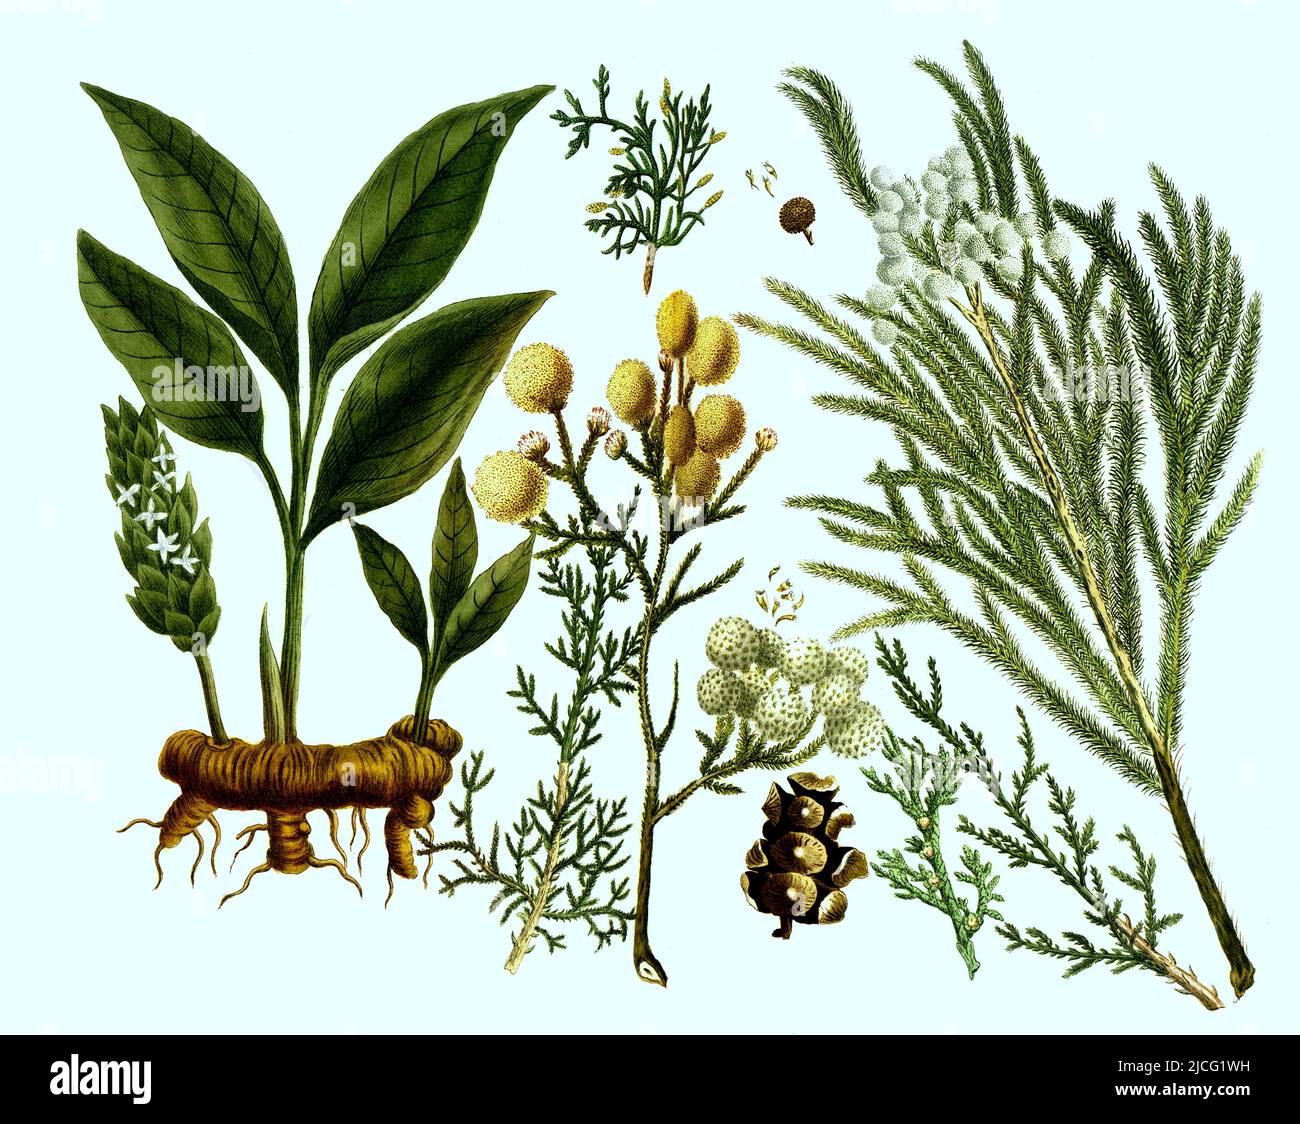 verschiedene Pflanzen der Familie der Zypressengewächse, Cupressaceae Cupressus foemina, mas, taxifoliis, pinulis (rechts) und Curcuma, Kurkuma oder Kurkume, Curcuma longa, auch Gelber Ingwer, Safranwurzel, Gelbwurzeln (links)  /  various plants of the cypress family, Cupressaceae Cupressus foemina, mas, taxifoliis, pinulis (right) and Curcuma, turmeric or curcume, Curcuma longa, also yellow ginger, saffron root, turmeric (left), Digital retuschierte Illustration aus Phytanthoza iconographica von Johann Wilhelm Weinmann, Maler Bartholomäus Seutter und Kupferstecher Johann Jakob Haid und Johann Stock Photo